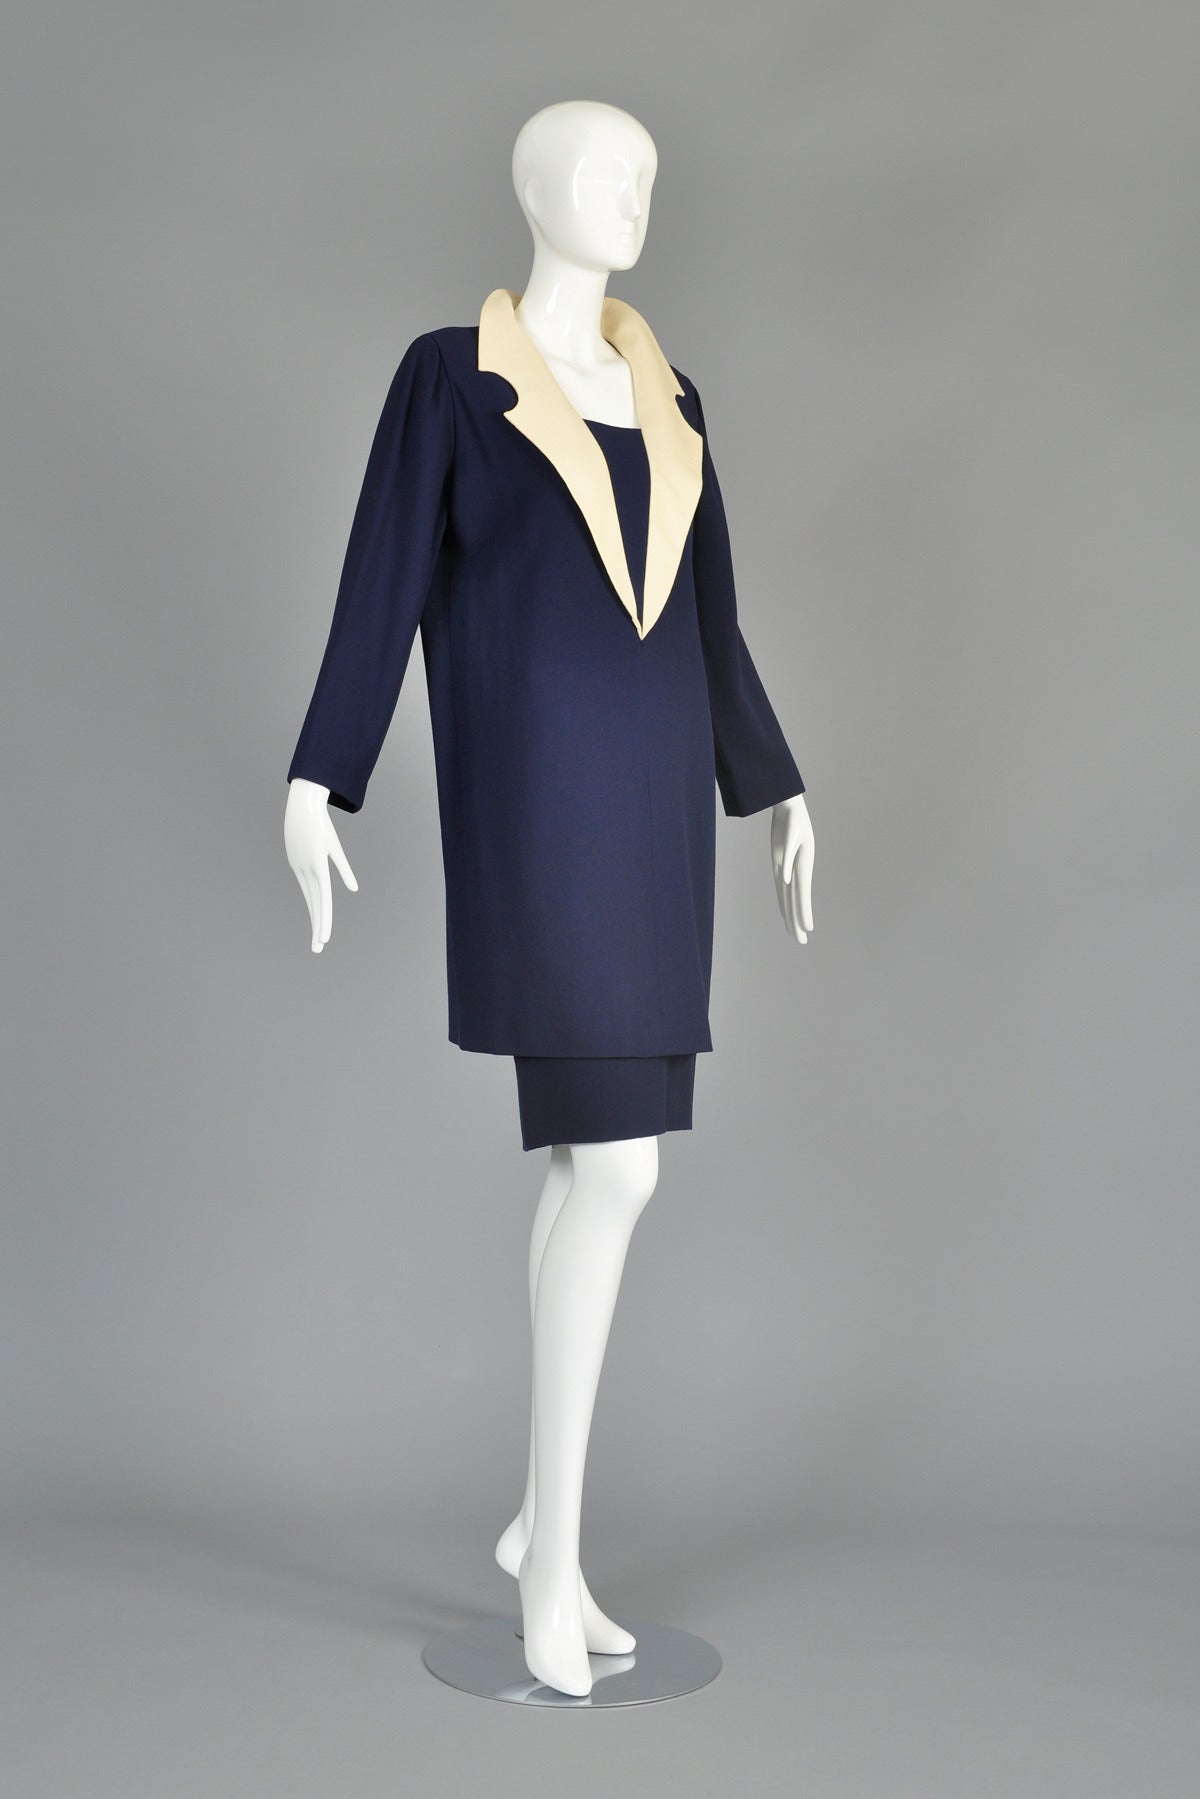 c. 1992 Pierre Cardin Haute Couture Skirt plus Tunic Shift Dress For Sale 1